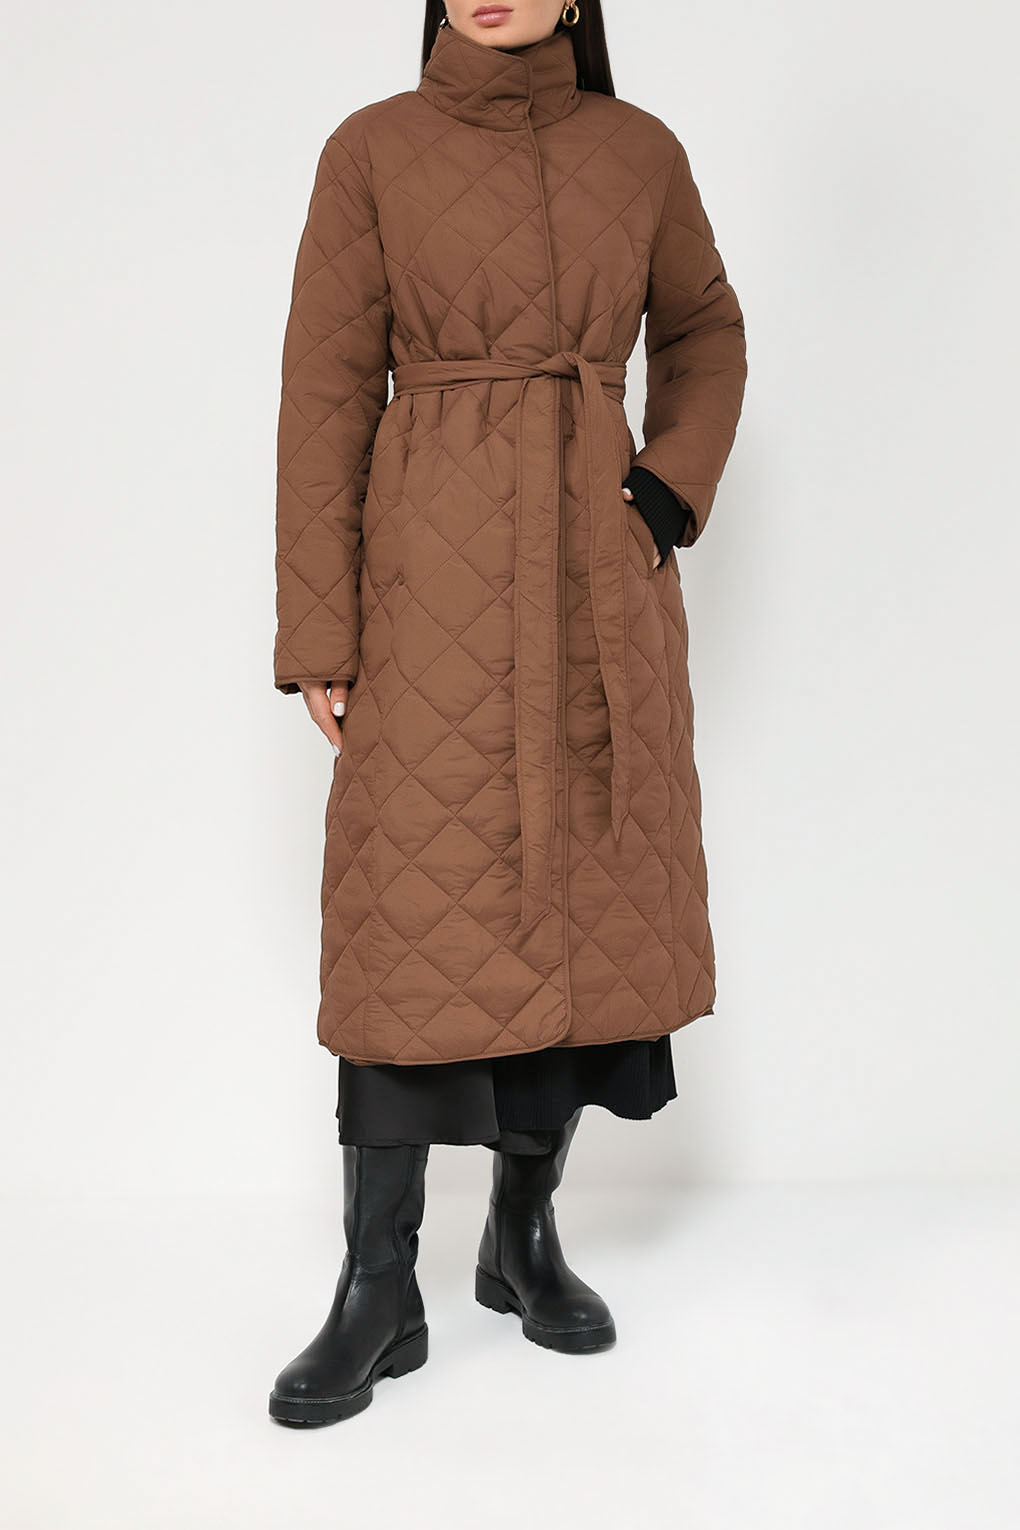 Пальто женское Auranna AU23106266CD-010 коричневое 46 RU